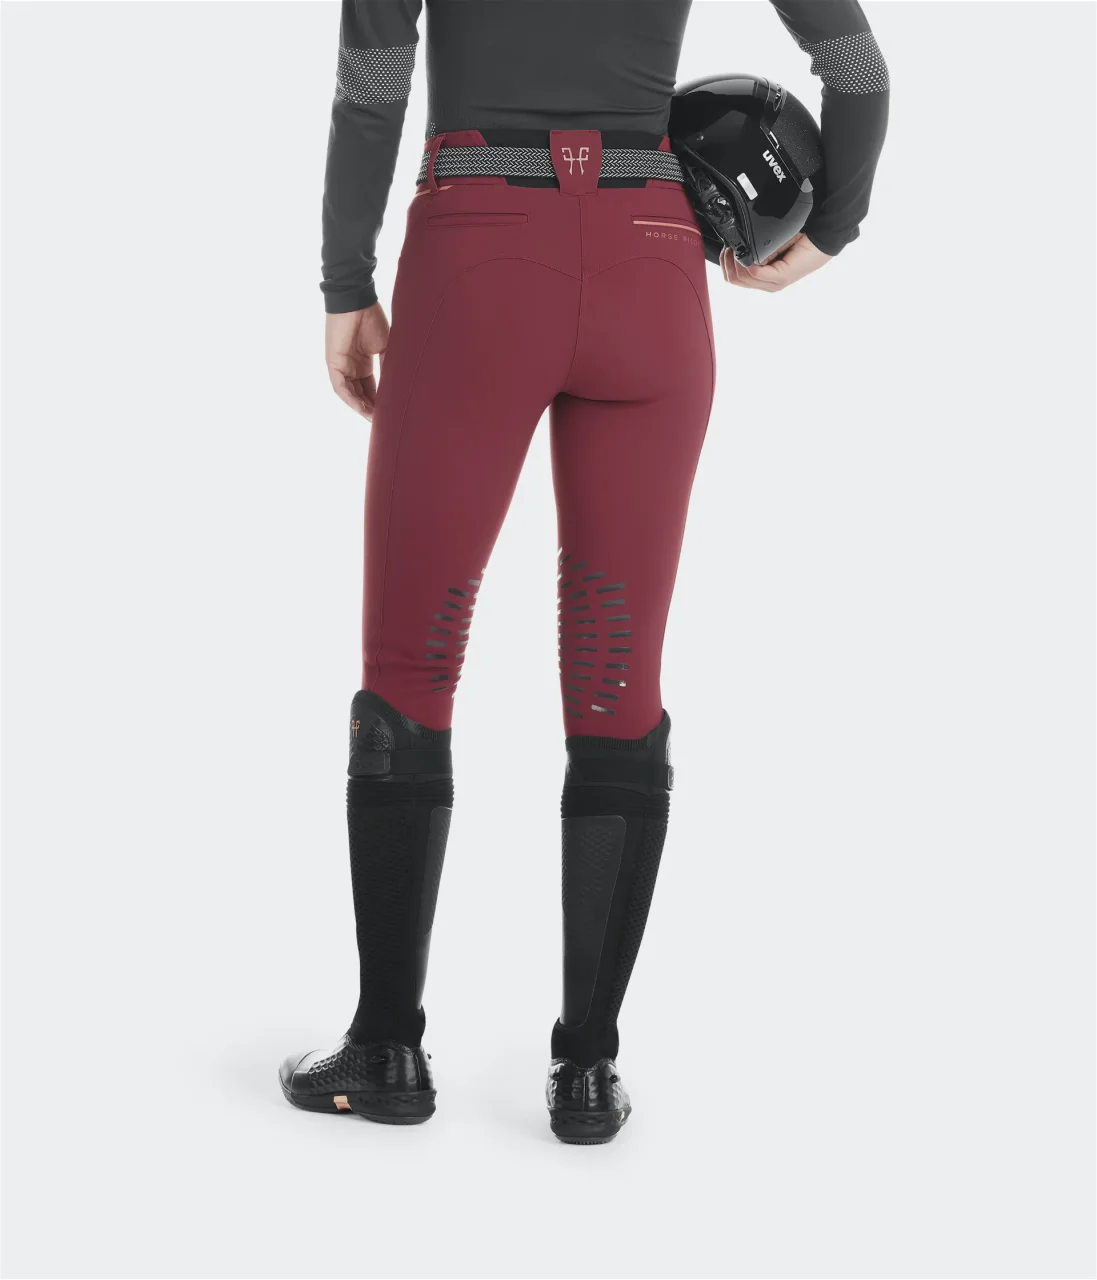 Pantalon équitation femme Horse Pilot X-Design